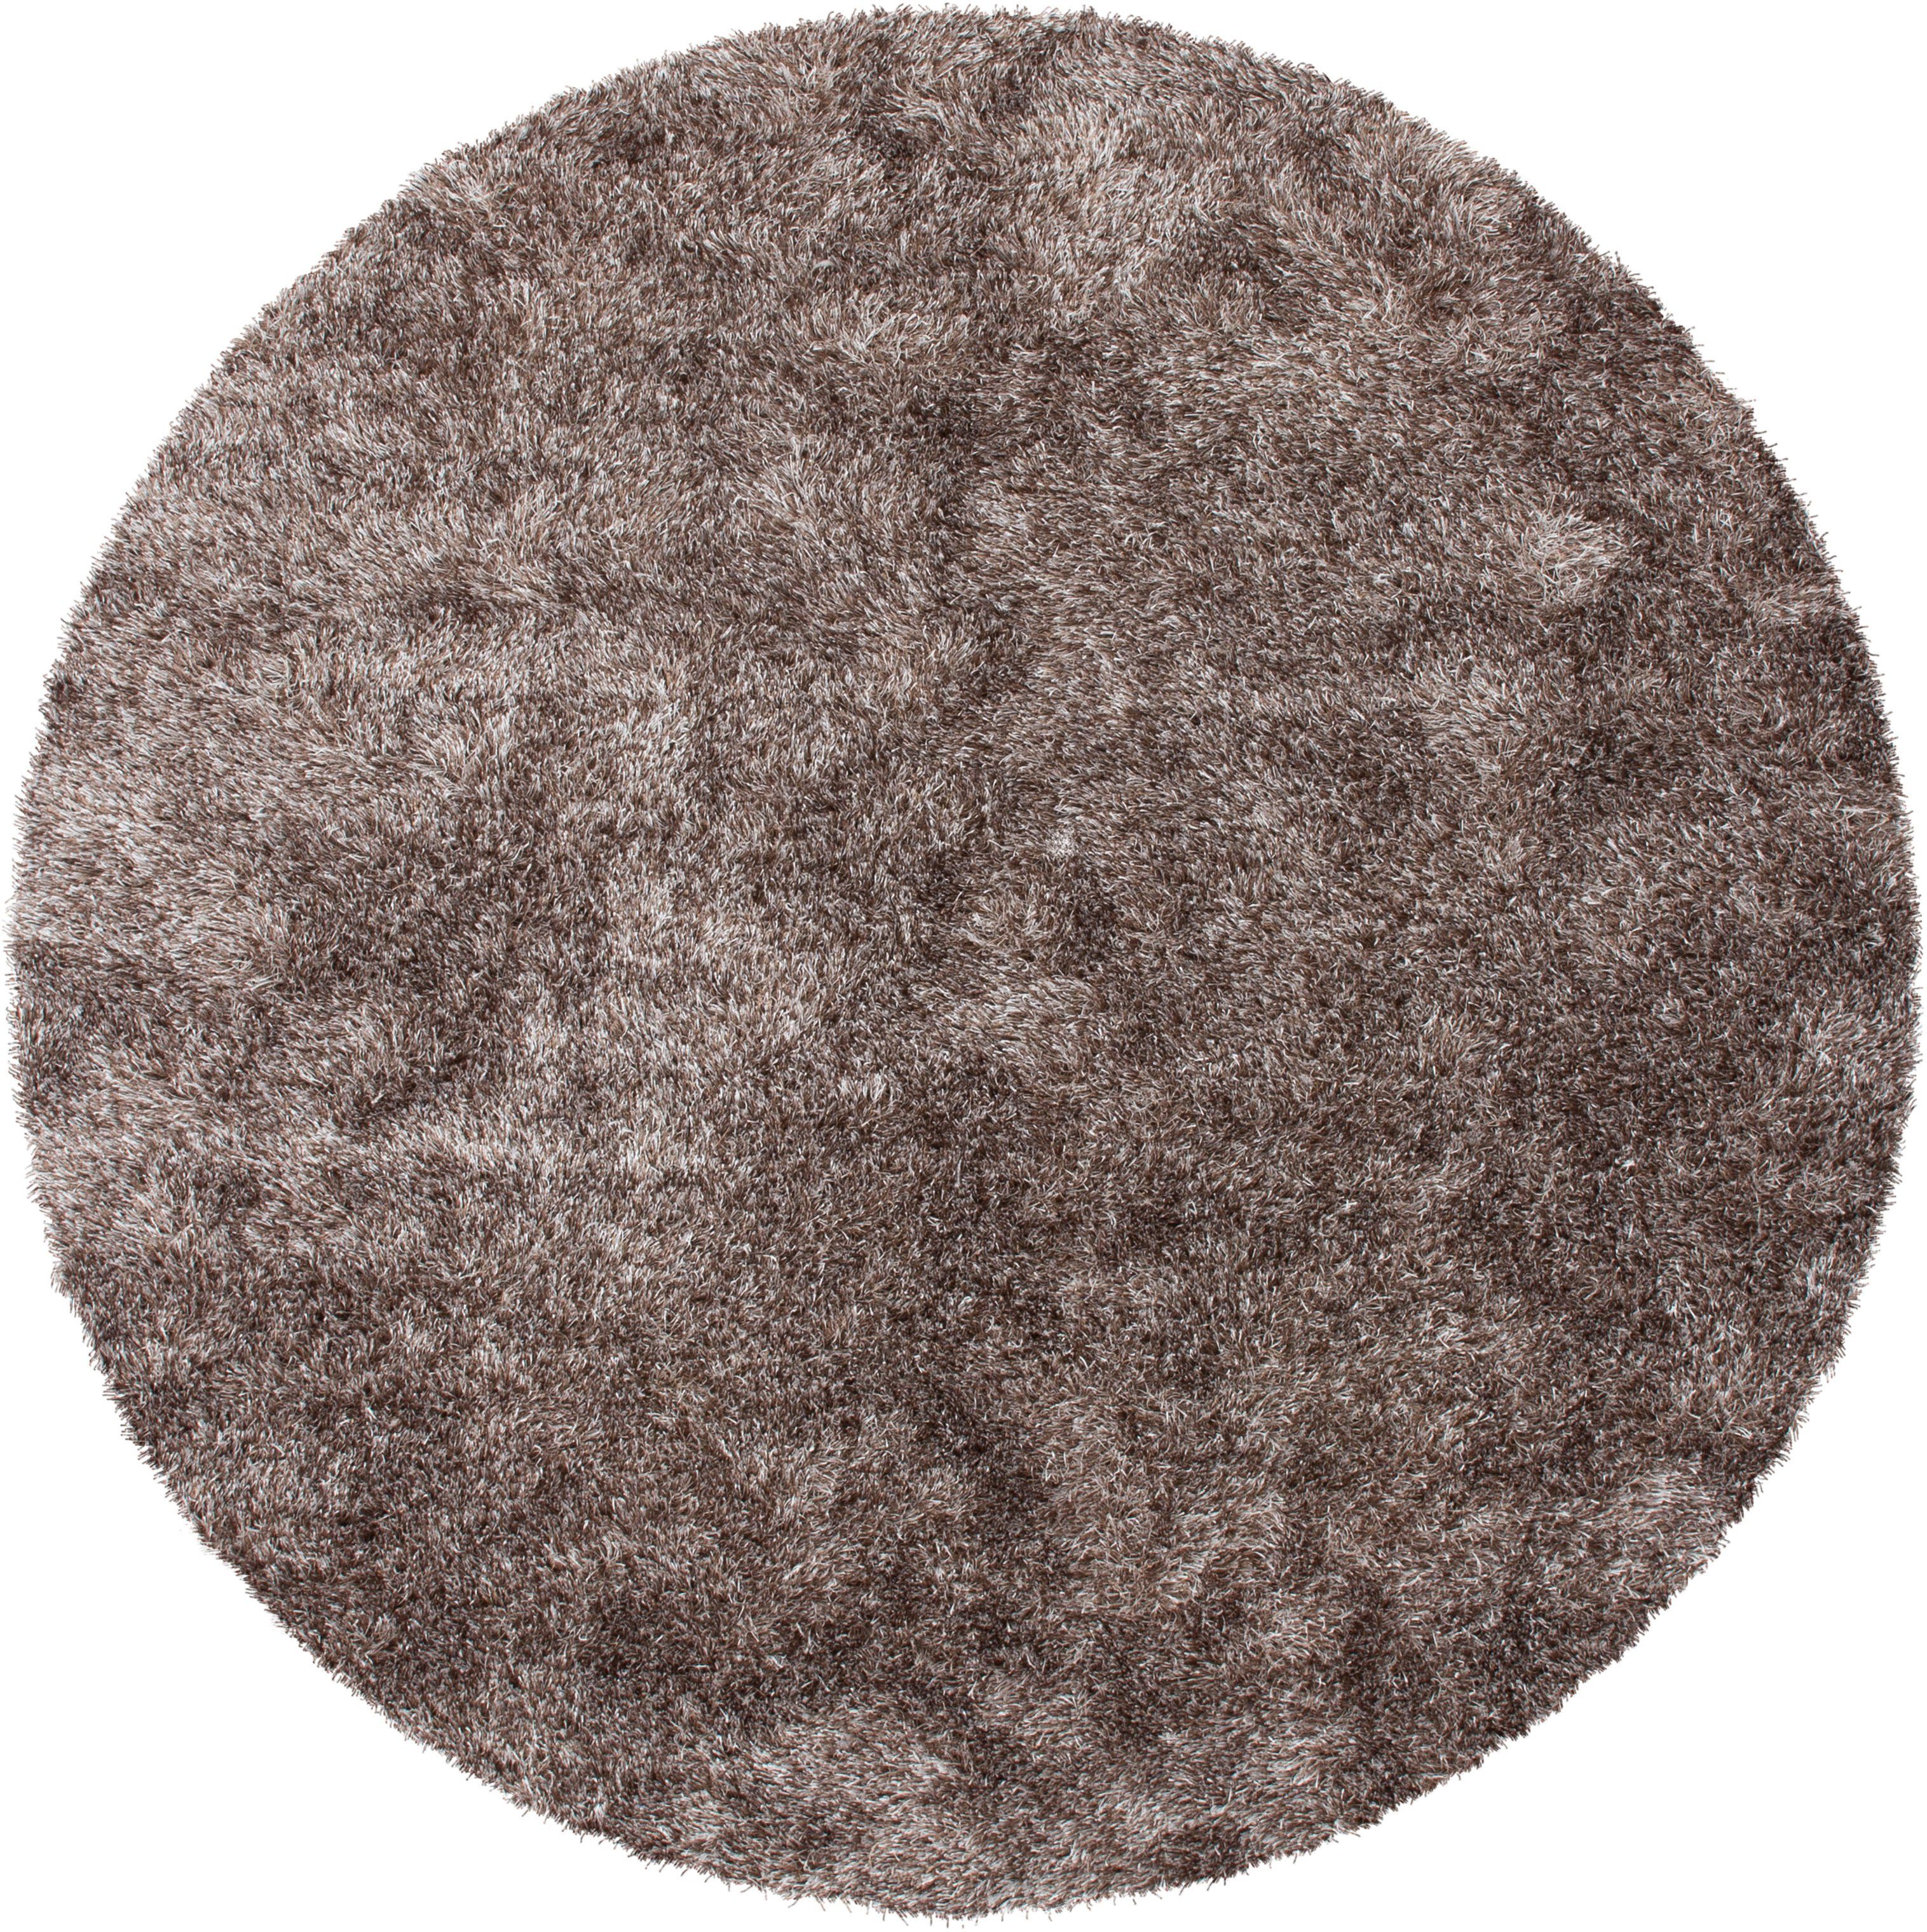 Hochflor-Teppich »Diamond 700«, Kayoom, rund, Höhe 40 mm, besonders weich durch Microfaser, Wohnzimmer-HomeTrends